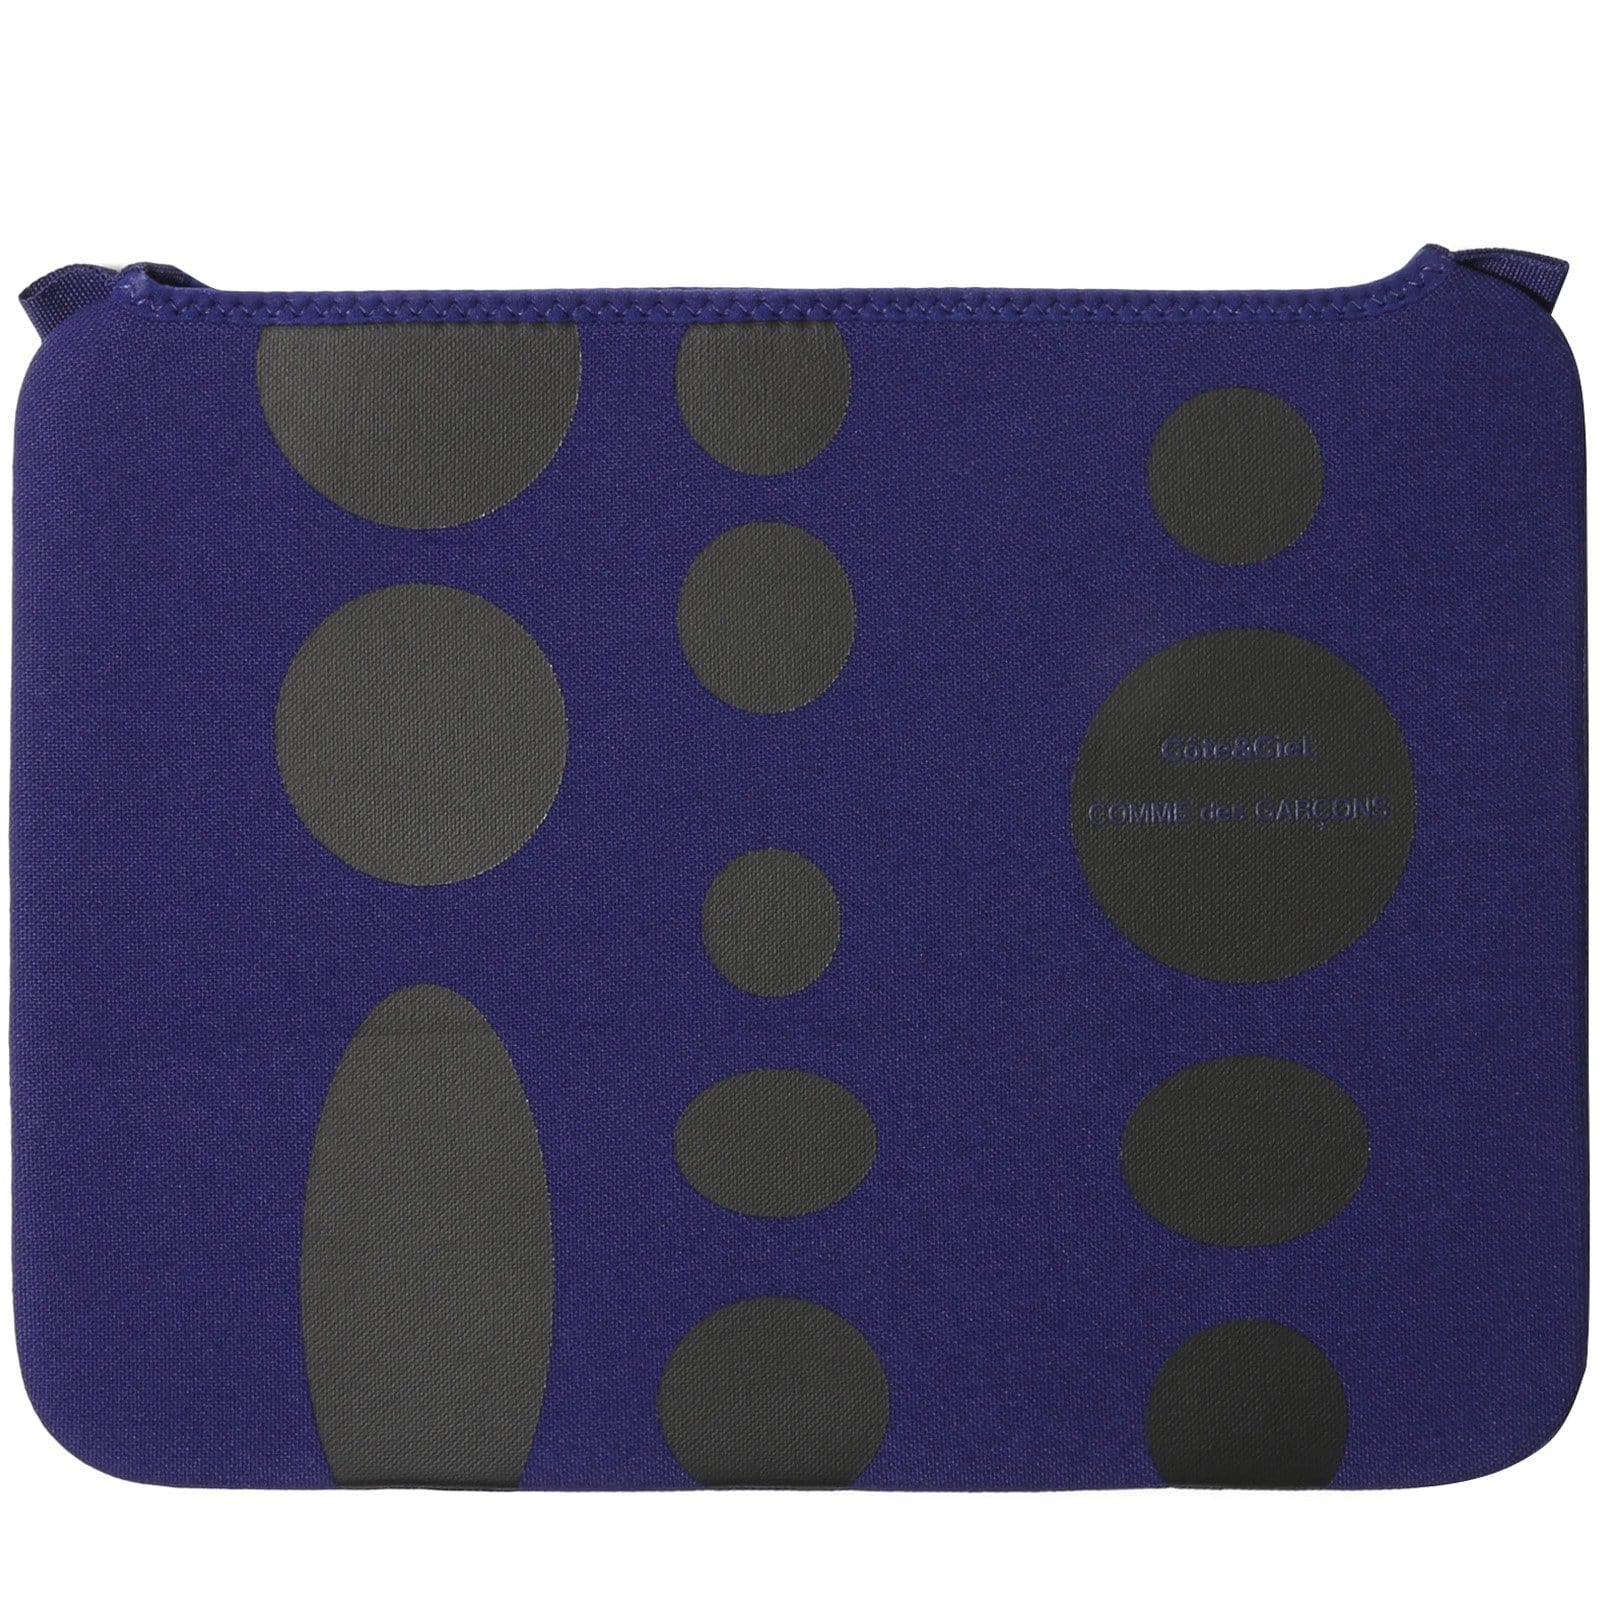 Comme Des Garçons Wallet Bags & Accessories BLUE / 13" x Cote & Ciel BLACK DOTS MACBOOK CASE 13"